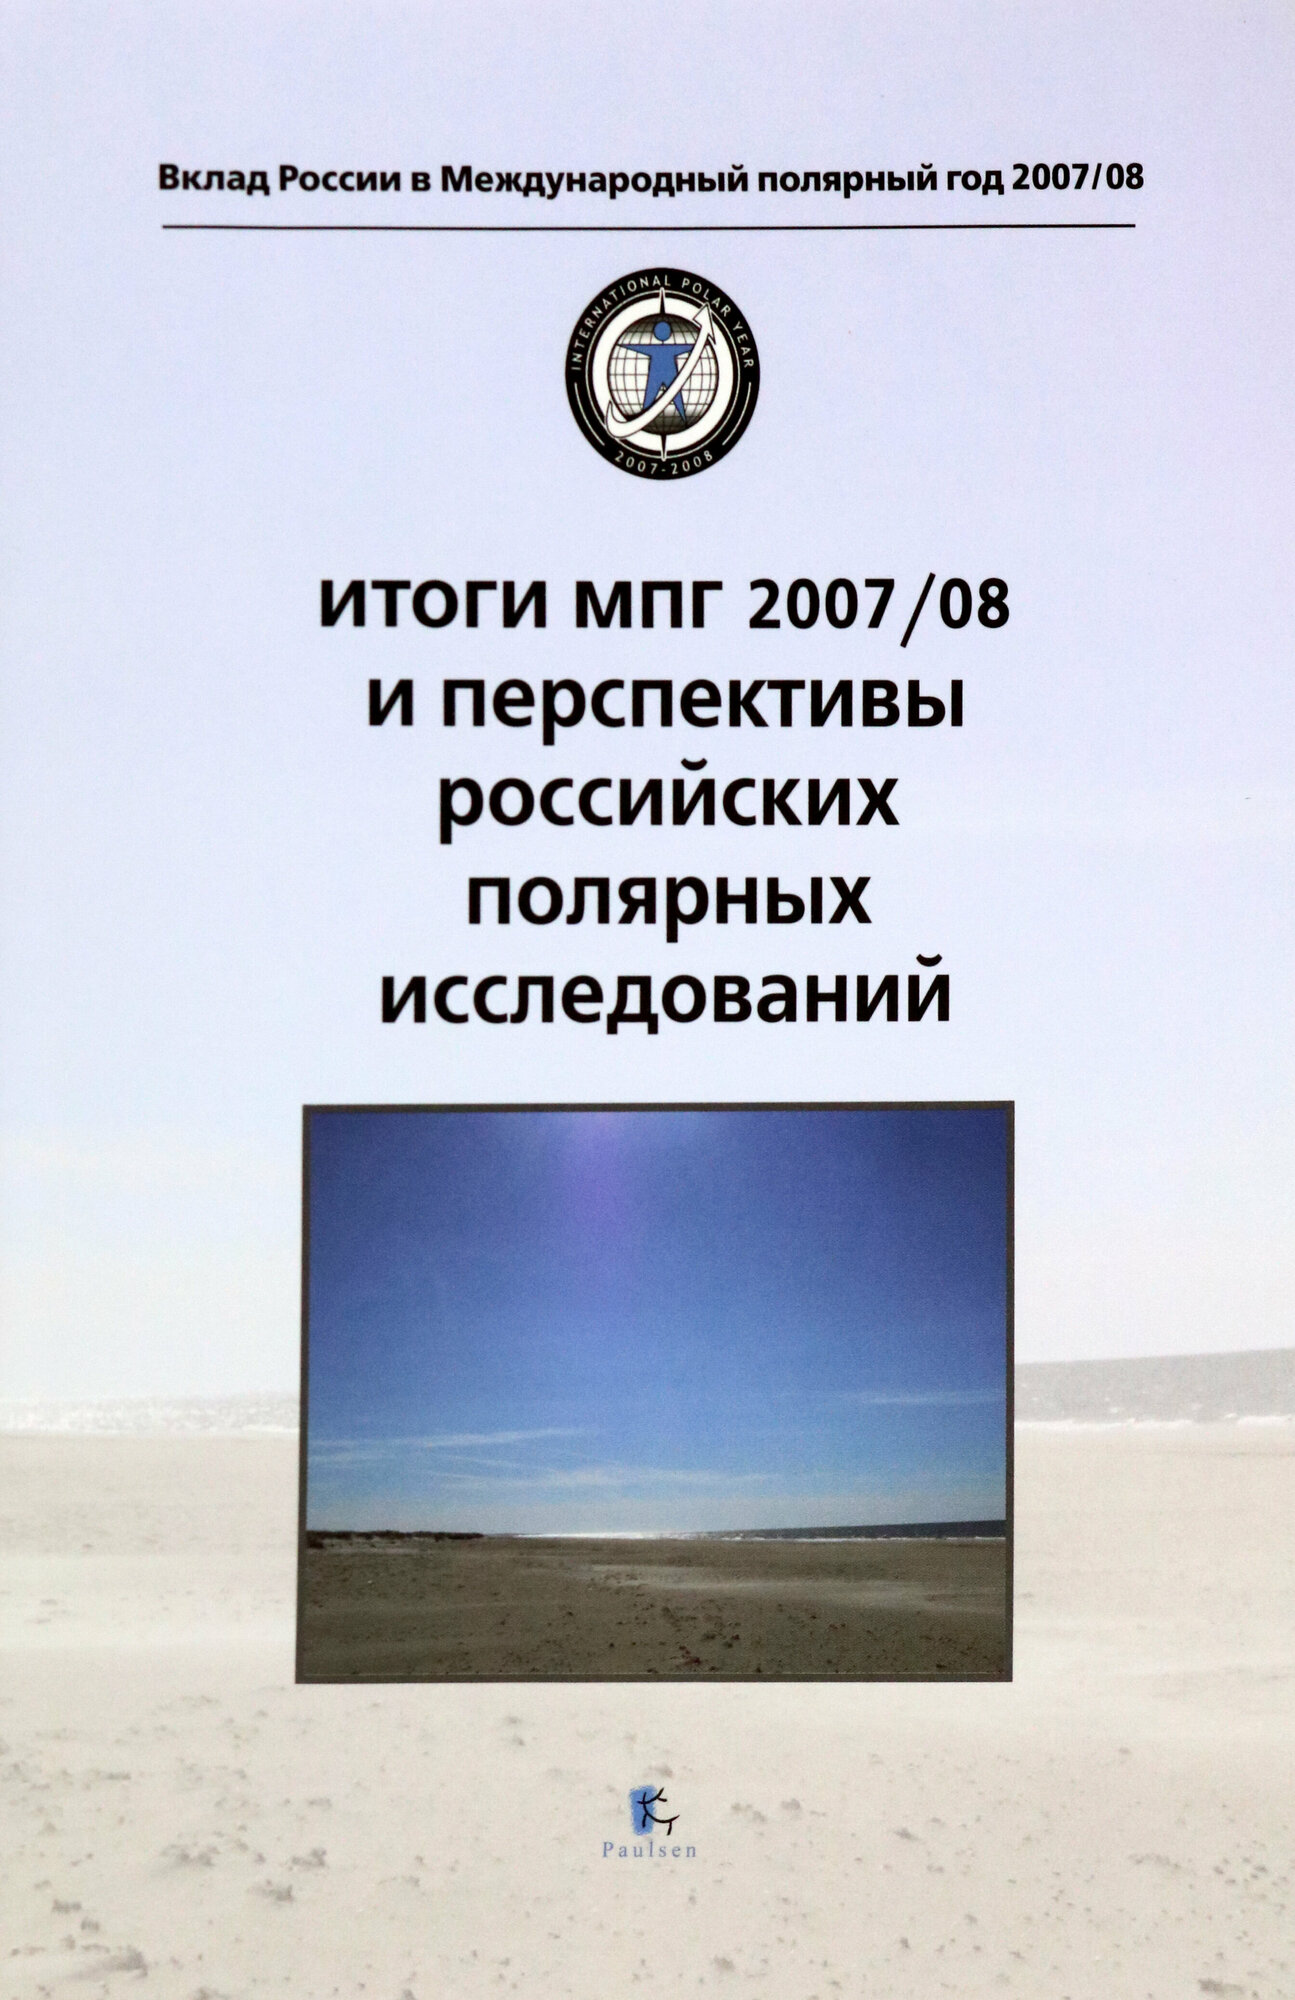 Итоги МПГ 2007/08 и перспективы российских полярных исследований - фото №4